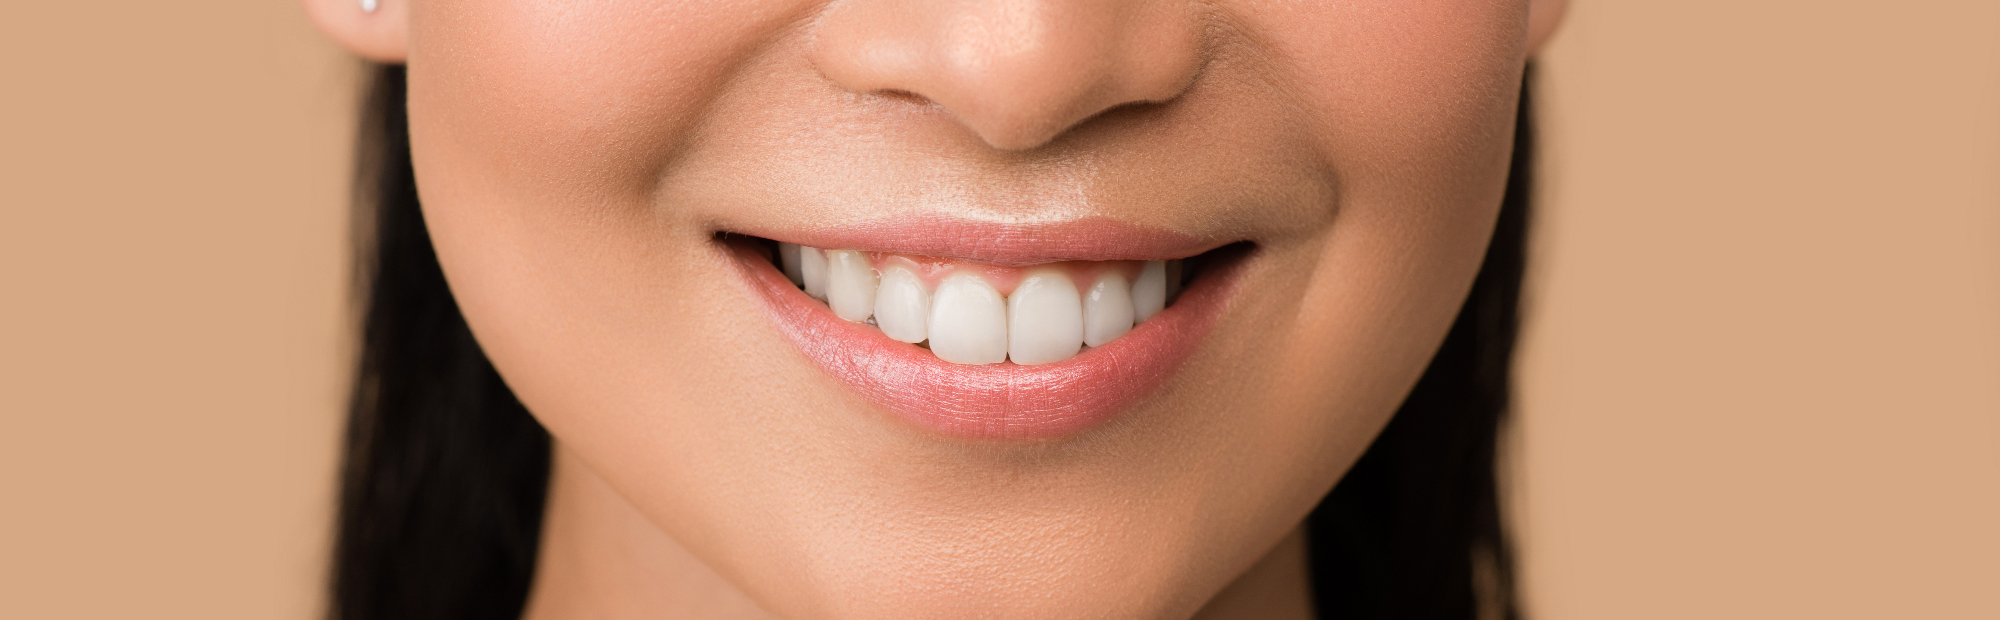 Dentalna ali zobna estetika – kaj vse vam lahko omogoči?